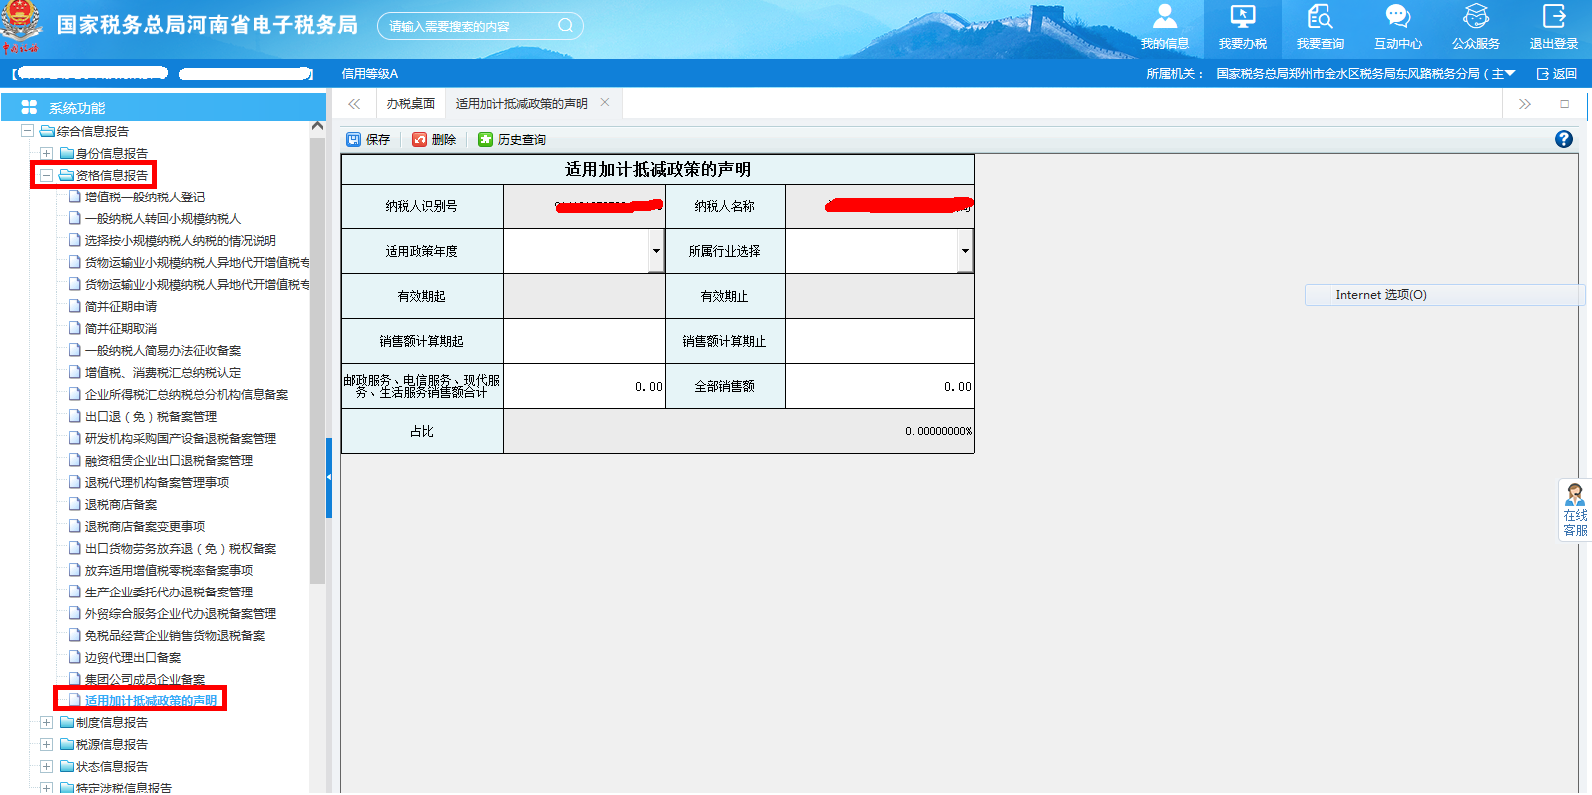 河南省电子税务局适用加计抵减政策的声明